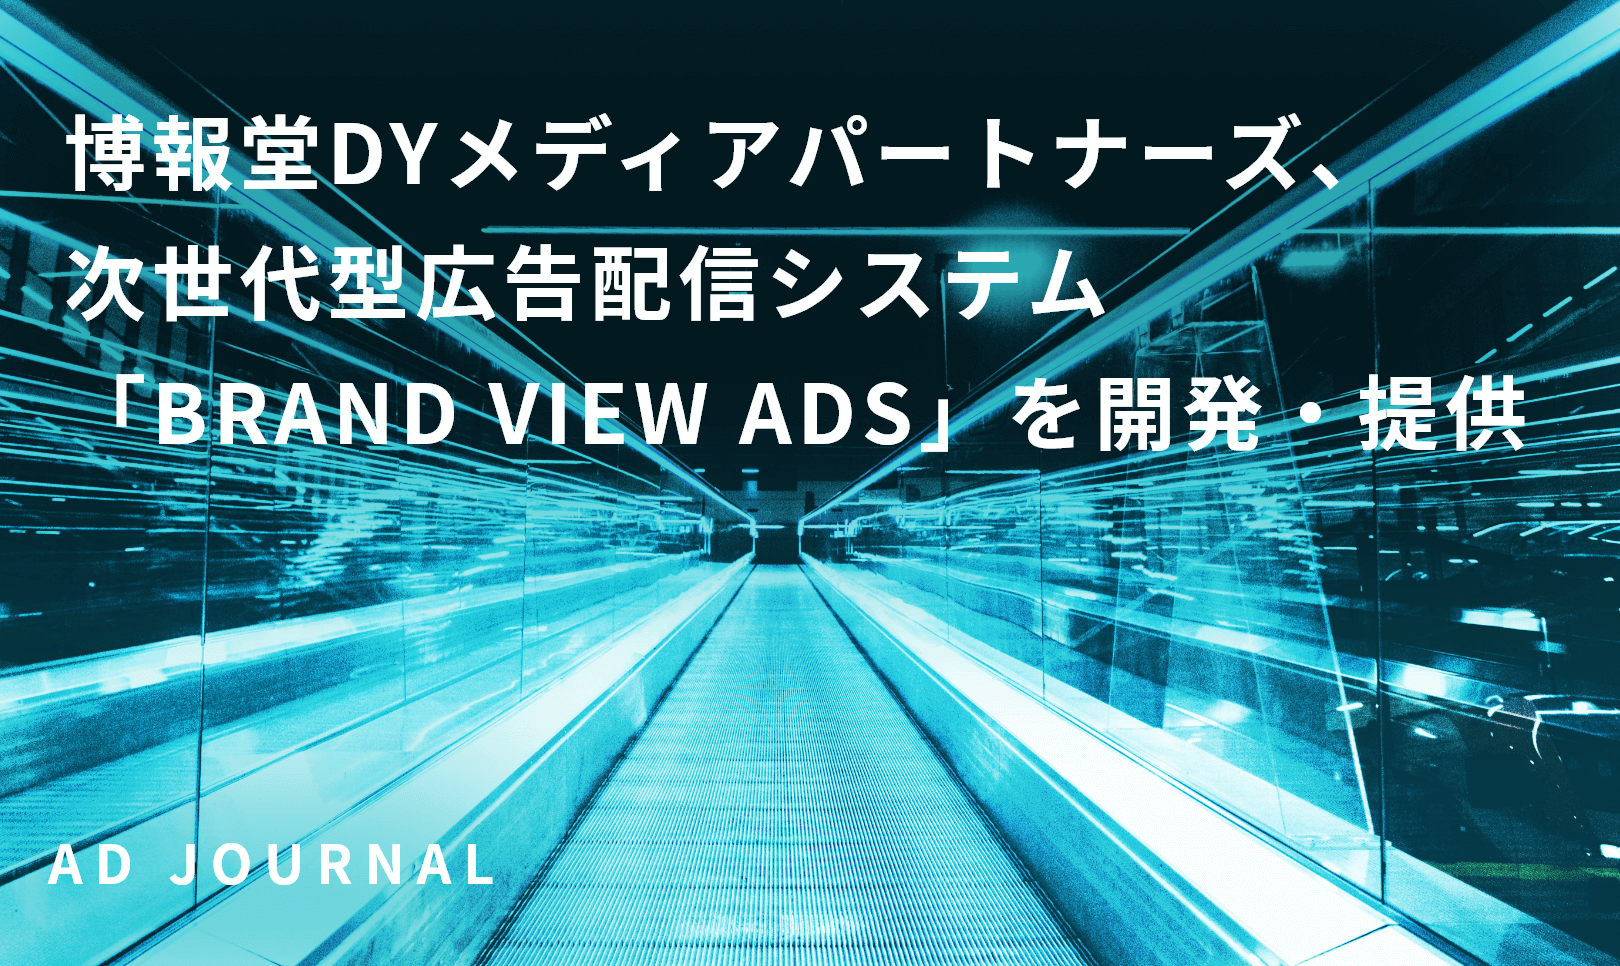 博報堂DYメディアパートナーズ、次世代型広告配信システム「BRAND VIEW ADS」を開発・提供